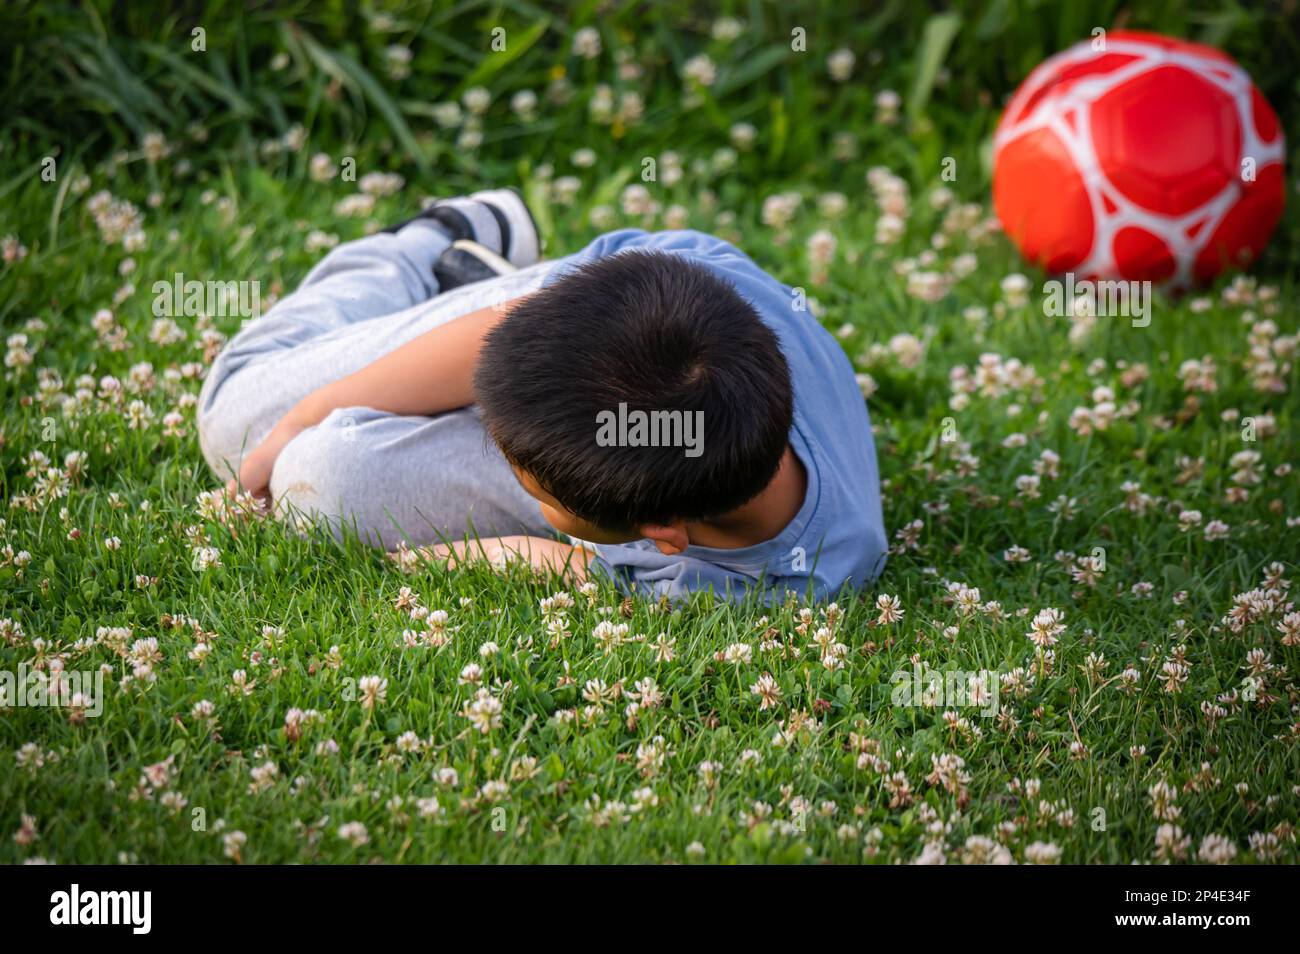 Bambini che giocano a calcio. Un ragazzo asiatico che cade in primavera. Foto Stock